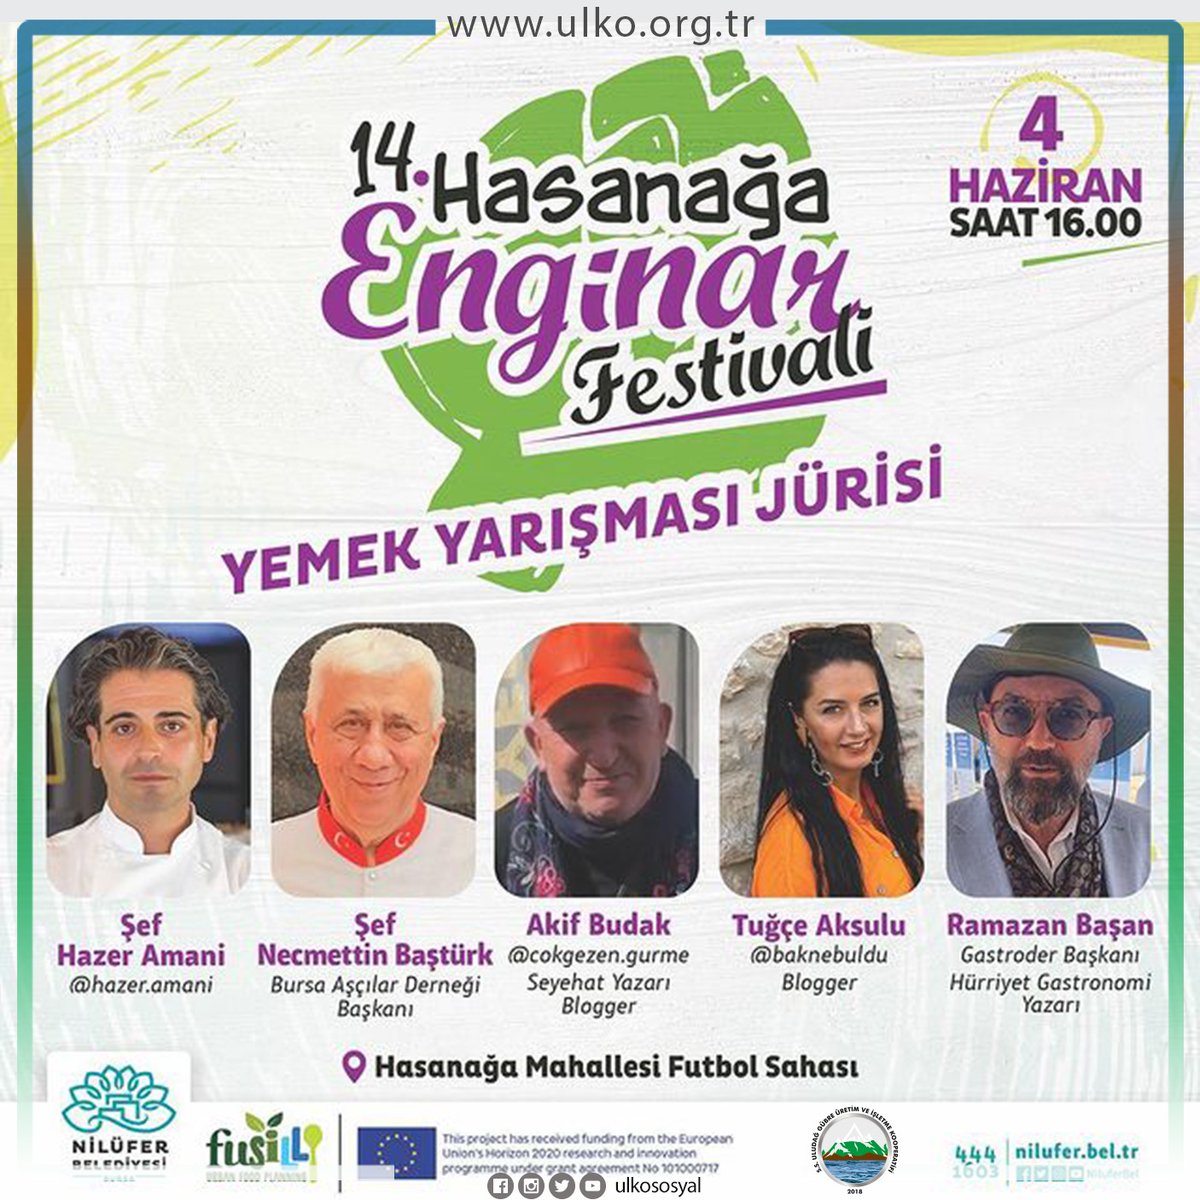 Yarın (4 Haziran Pazar) Nilüfer Belediyesi'nin düzenlediği Enginar Festivali'ndeyiz. Standımıza bekliyoruz. 🙏🏼 #ulko #enginarfestivali2023 #nilüferbelediyesi #organikgübre